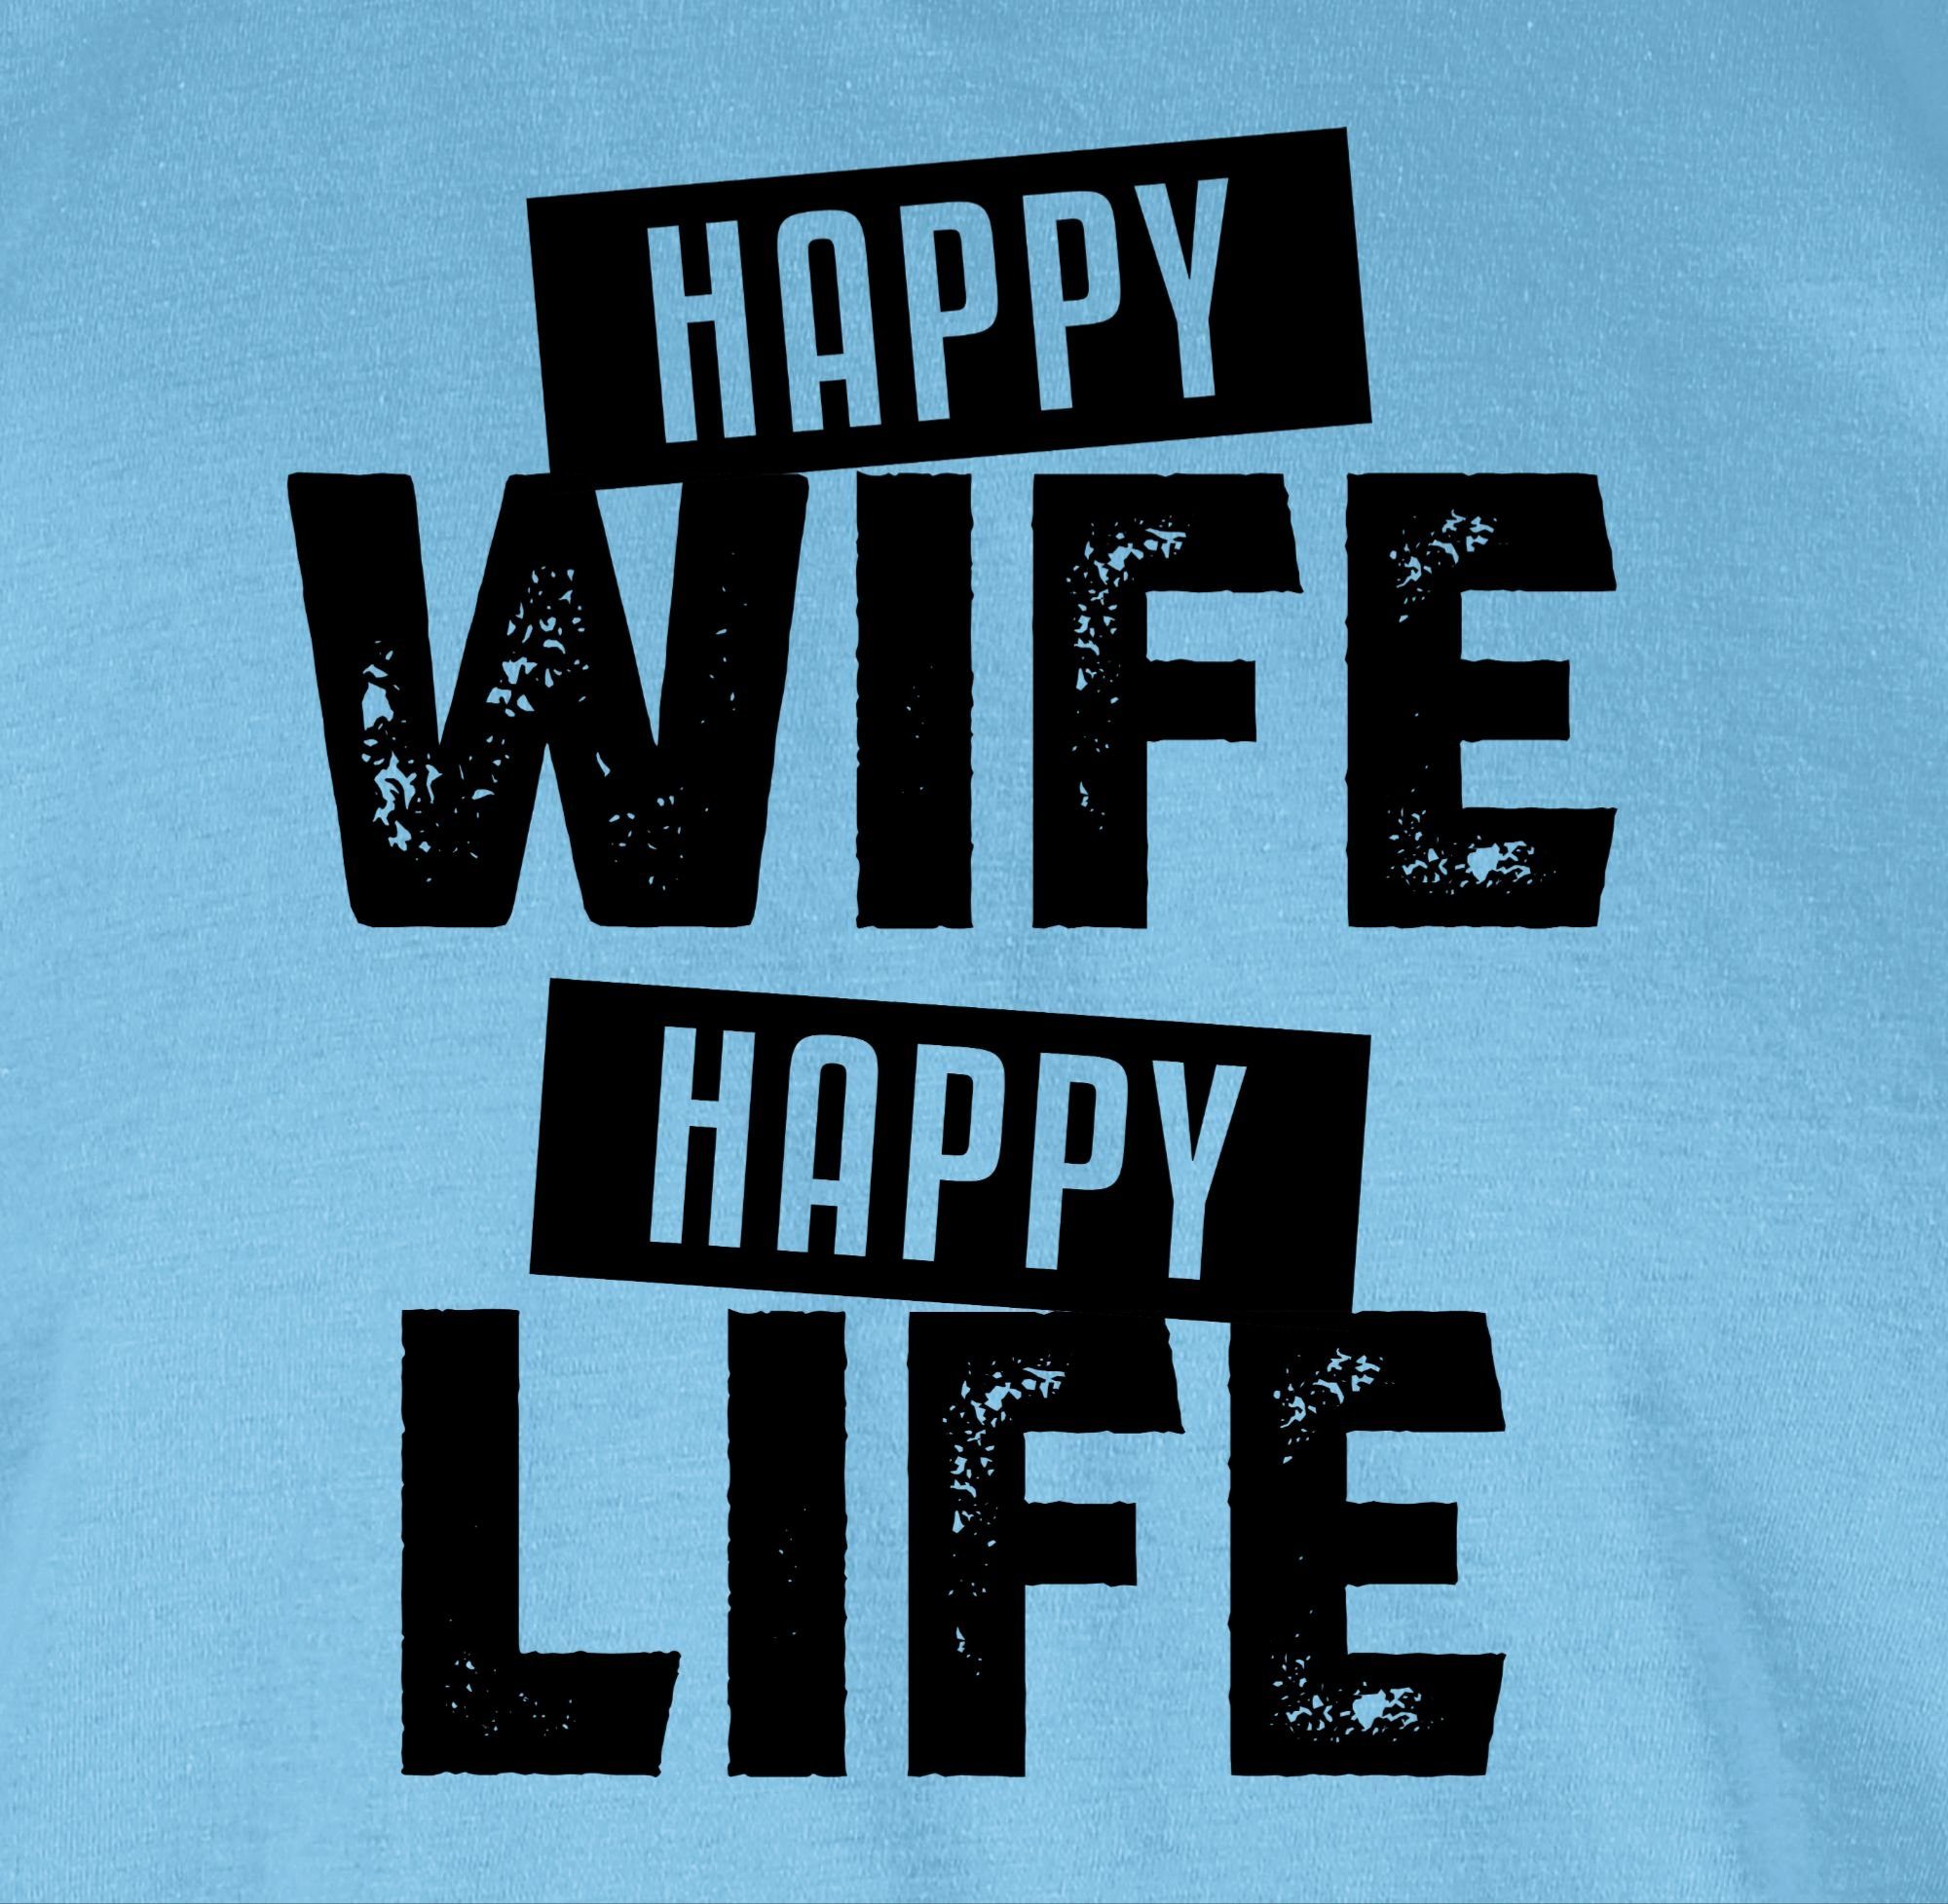 Life T-Shirt Hellblau Shirtracer Statement Spruch schwarz Happy mit 02 Sprüche Happy Wife